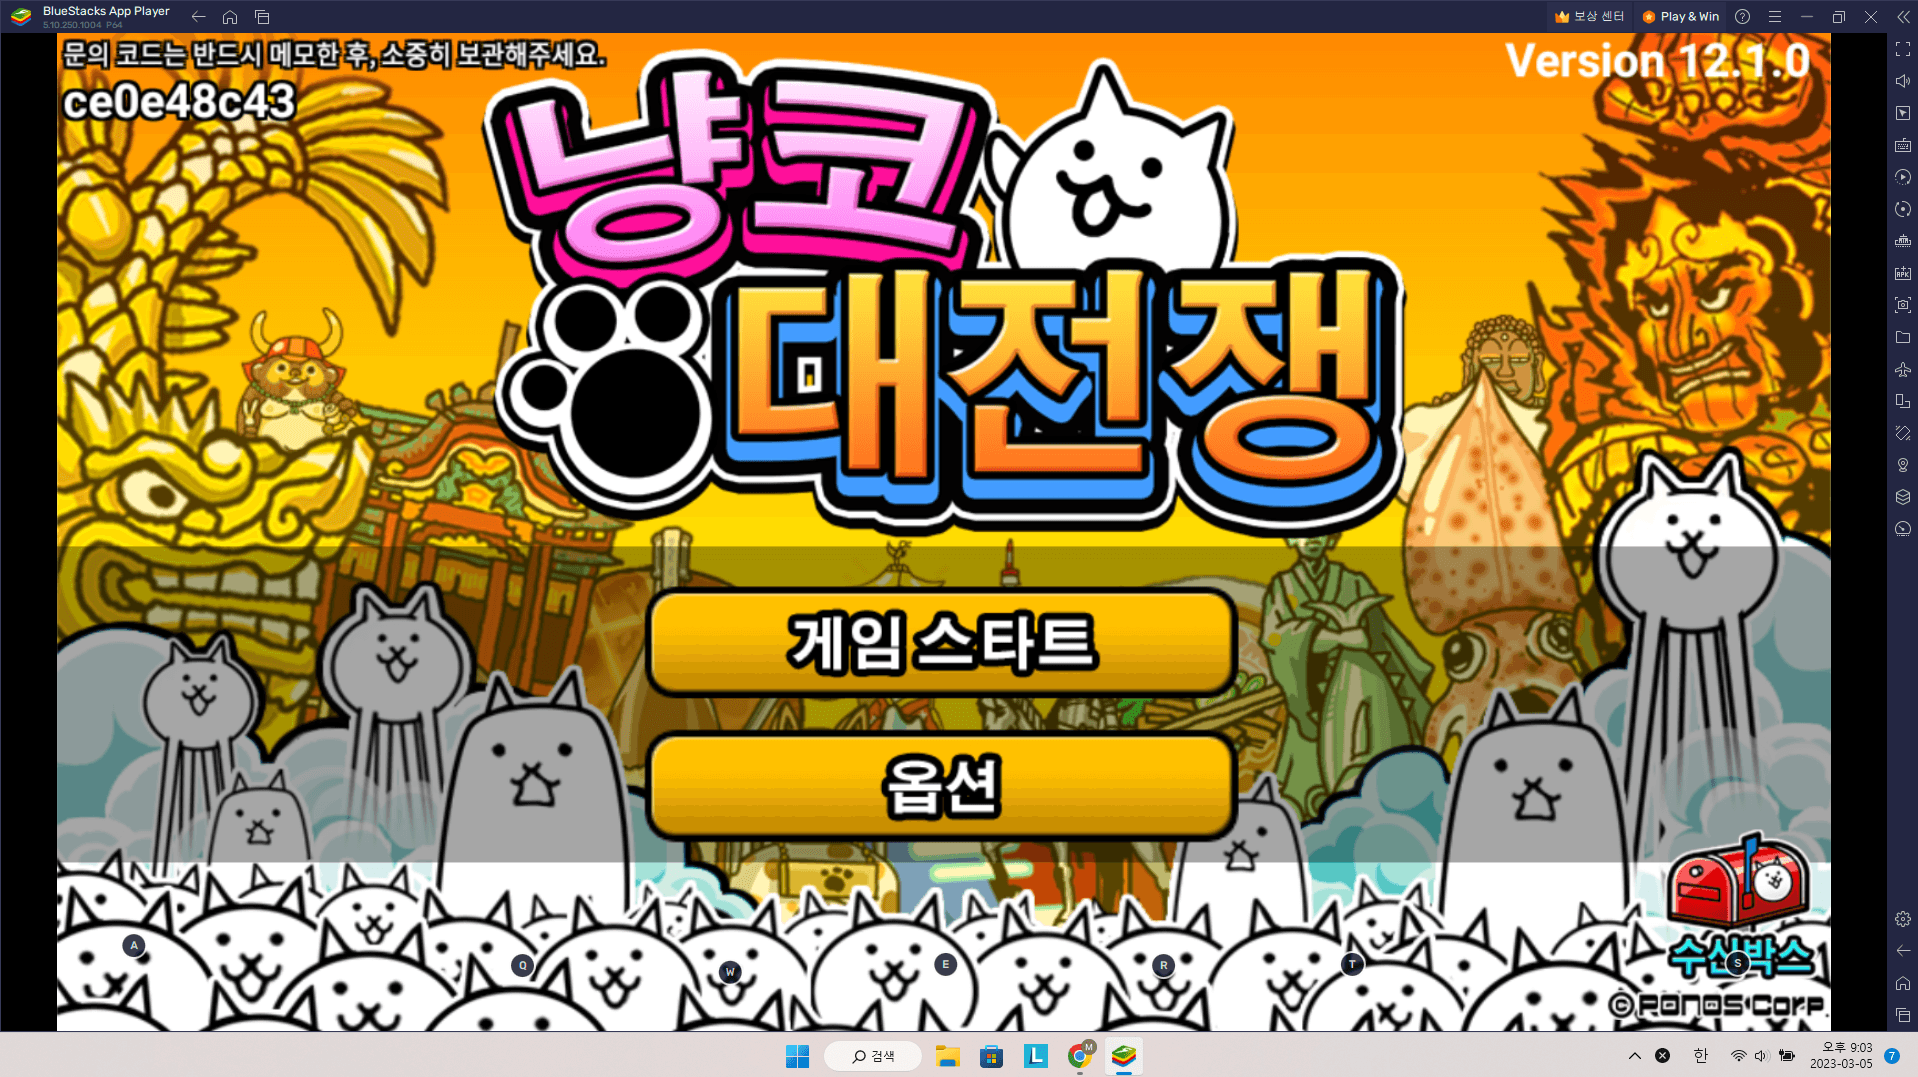 냥코 대전쟁을 공략하라! 귀여운 고양이 캐릭터들과 함께 적을 무찌르고 적의 성을 함락시키세요!